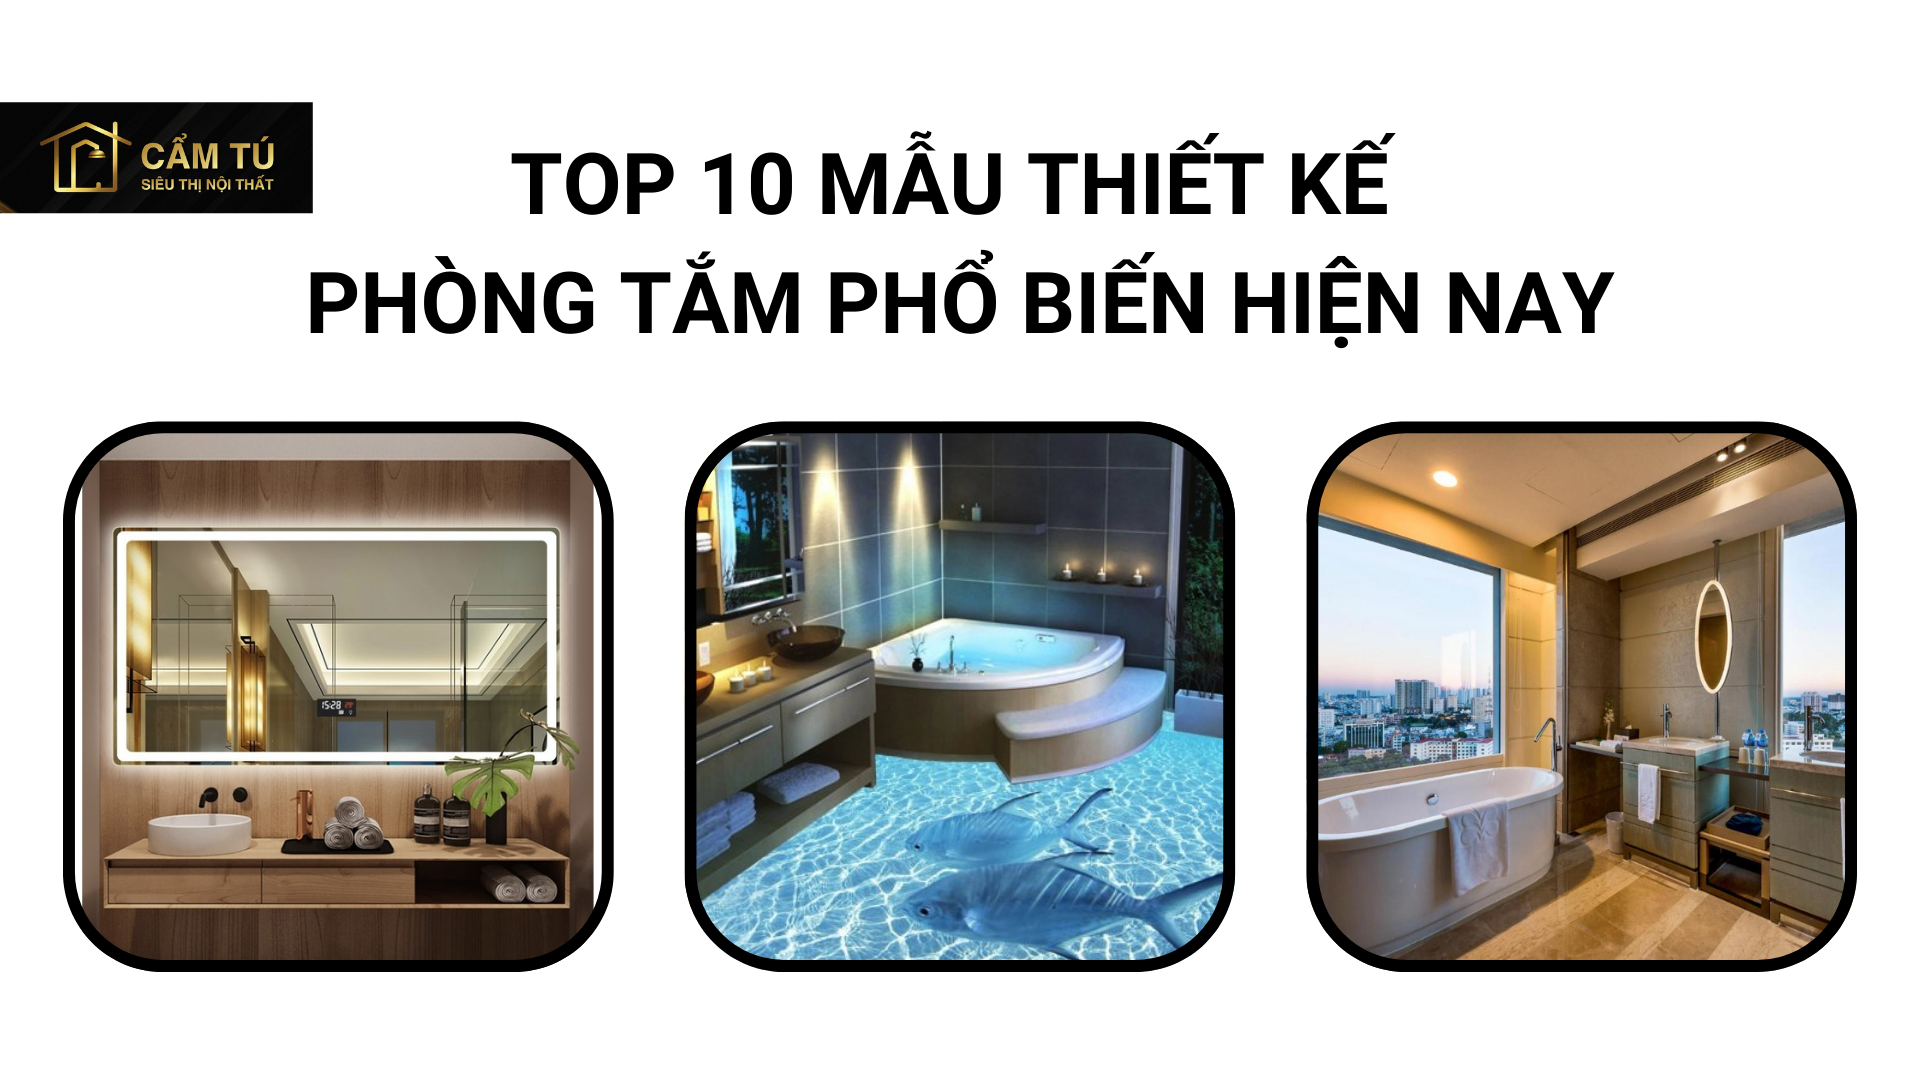 Top 10 mẫu thiết kế phòng tắm phổ biến hiện nay